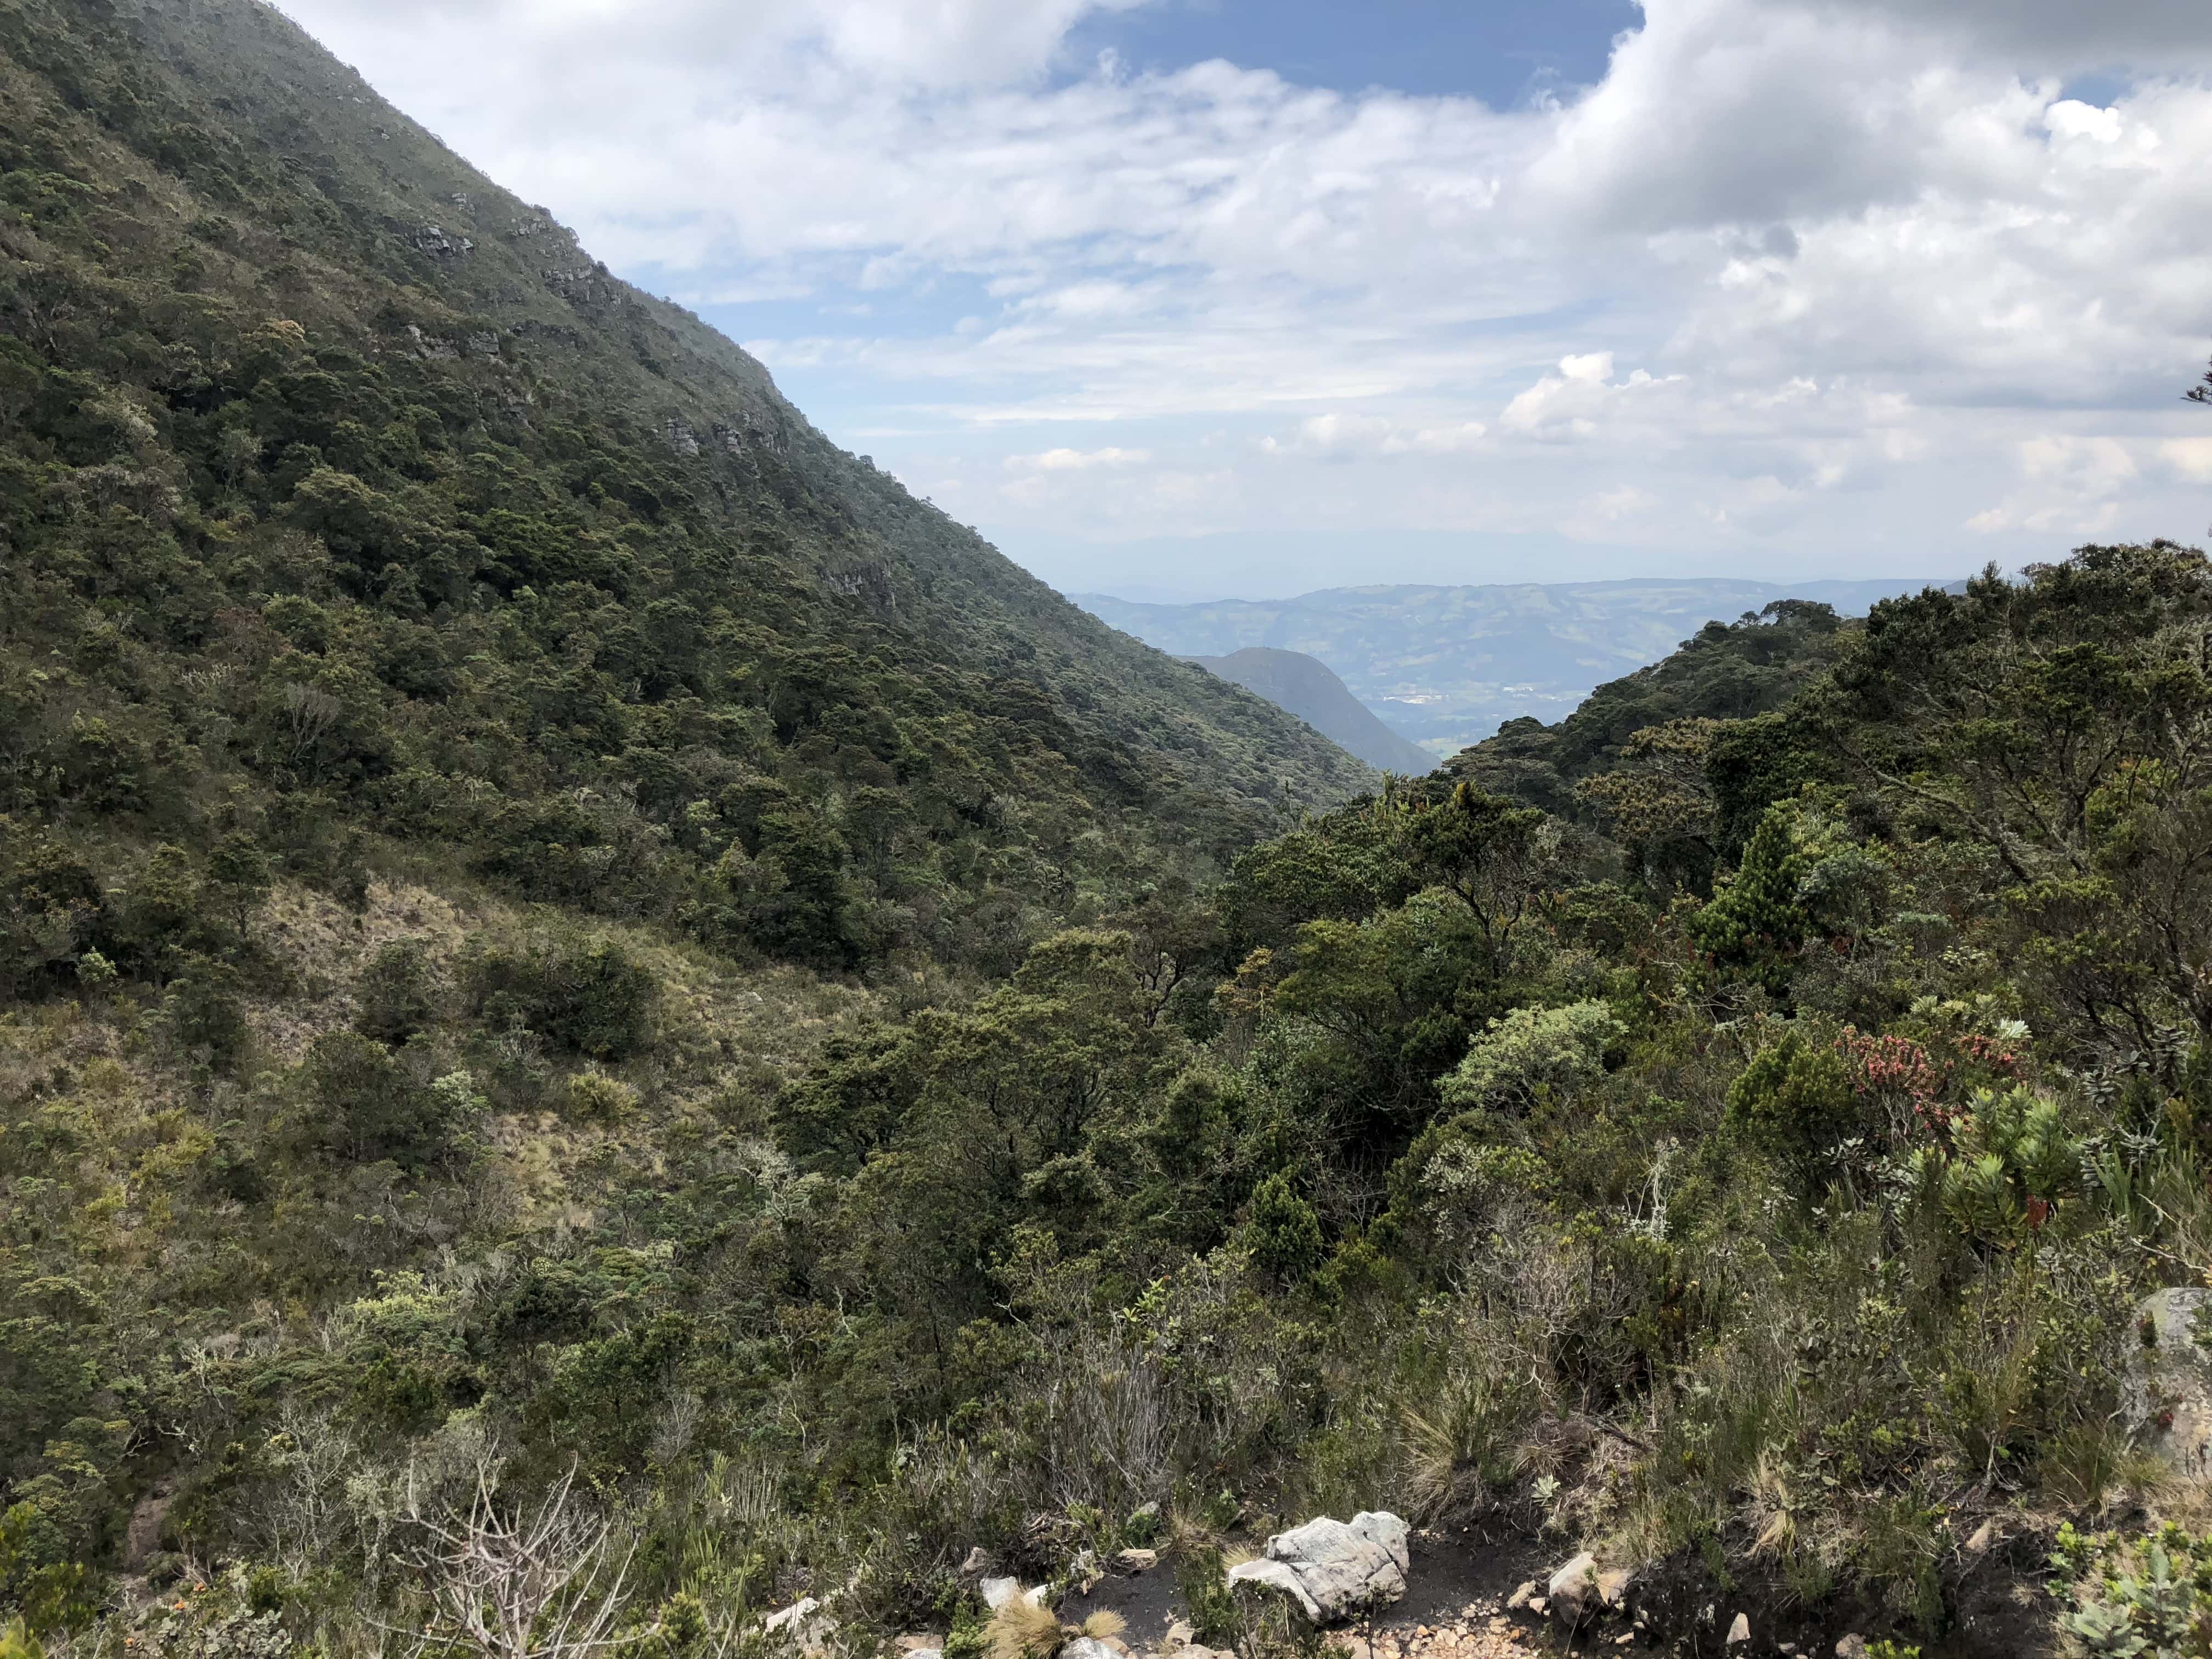 Views at Iguaque Flora and Fauna Sanctuary near Villa de Leyva, Boyacá, Colombia